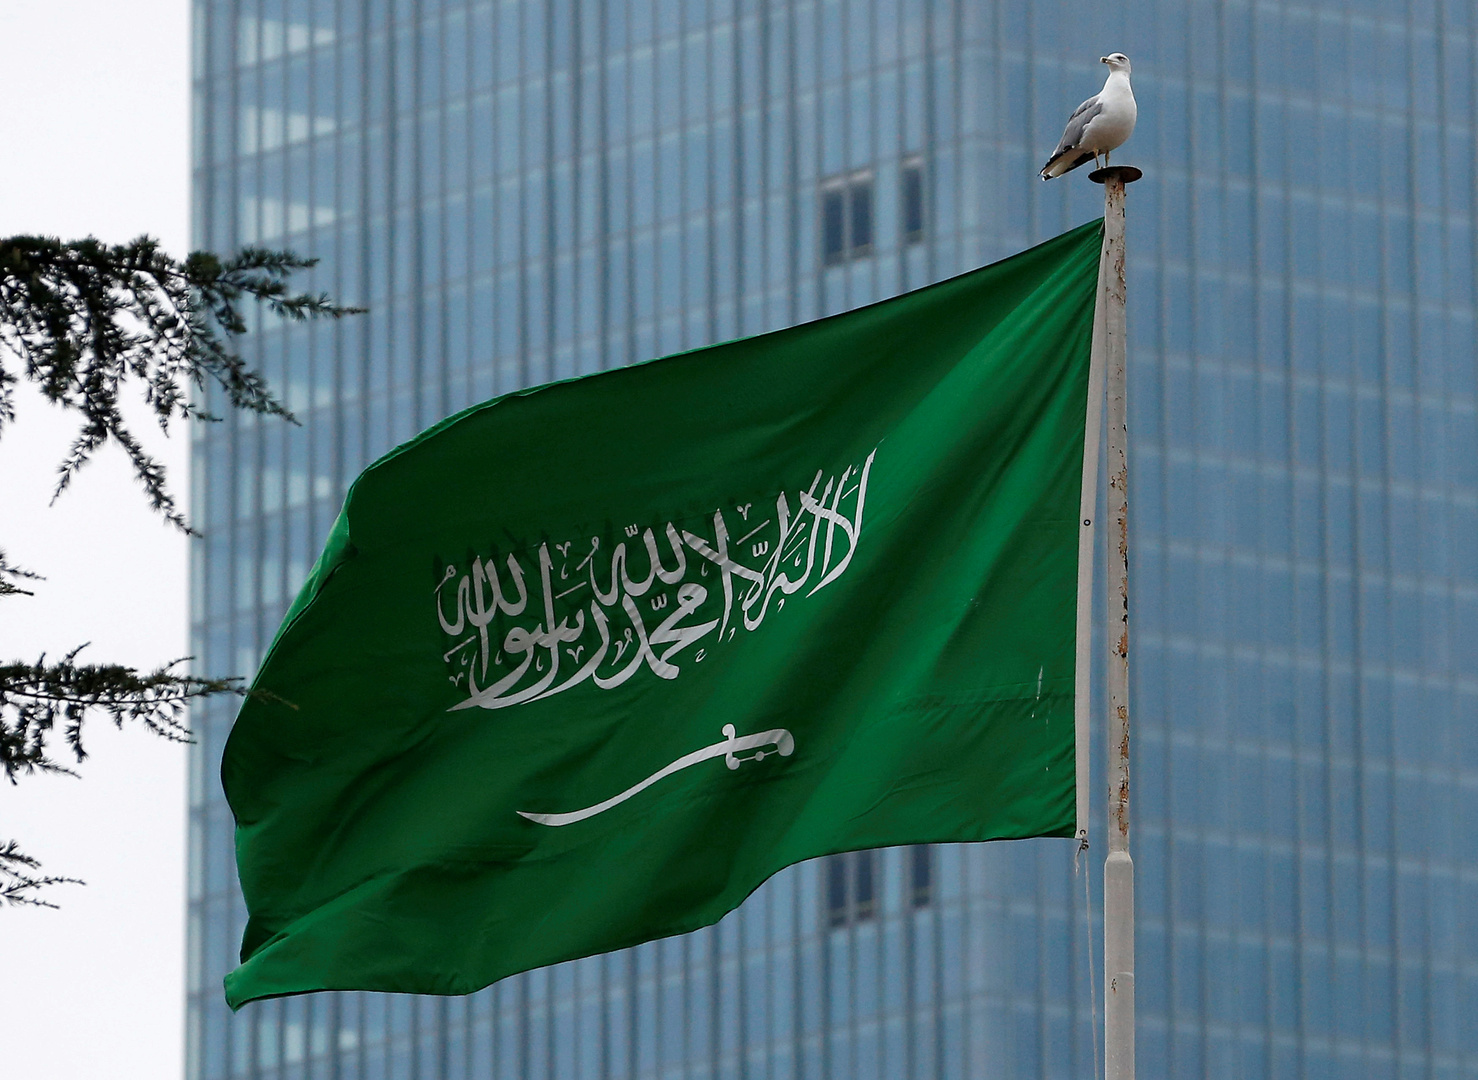 السعودية تحذر كل من يثبت تورطه بالسفر للدول الممنوع السفر إليها بعقوبات منها منع السفر لـ3 سنوات